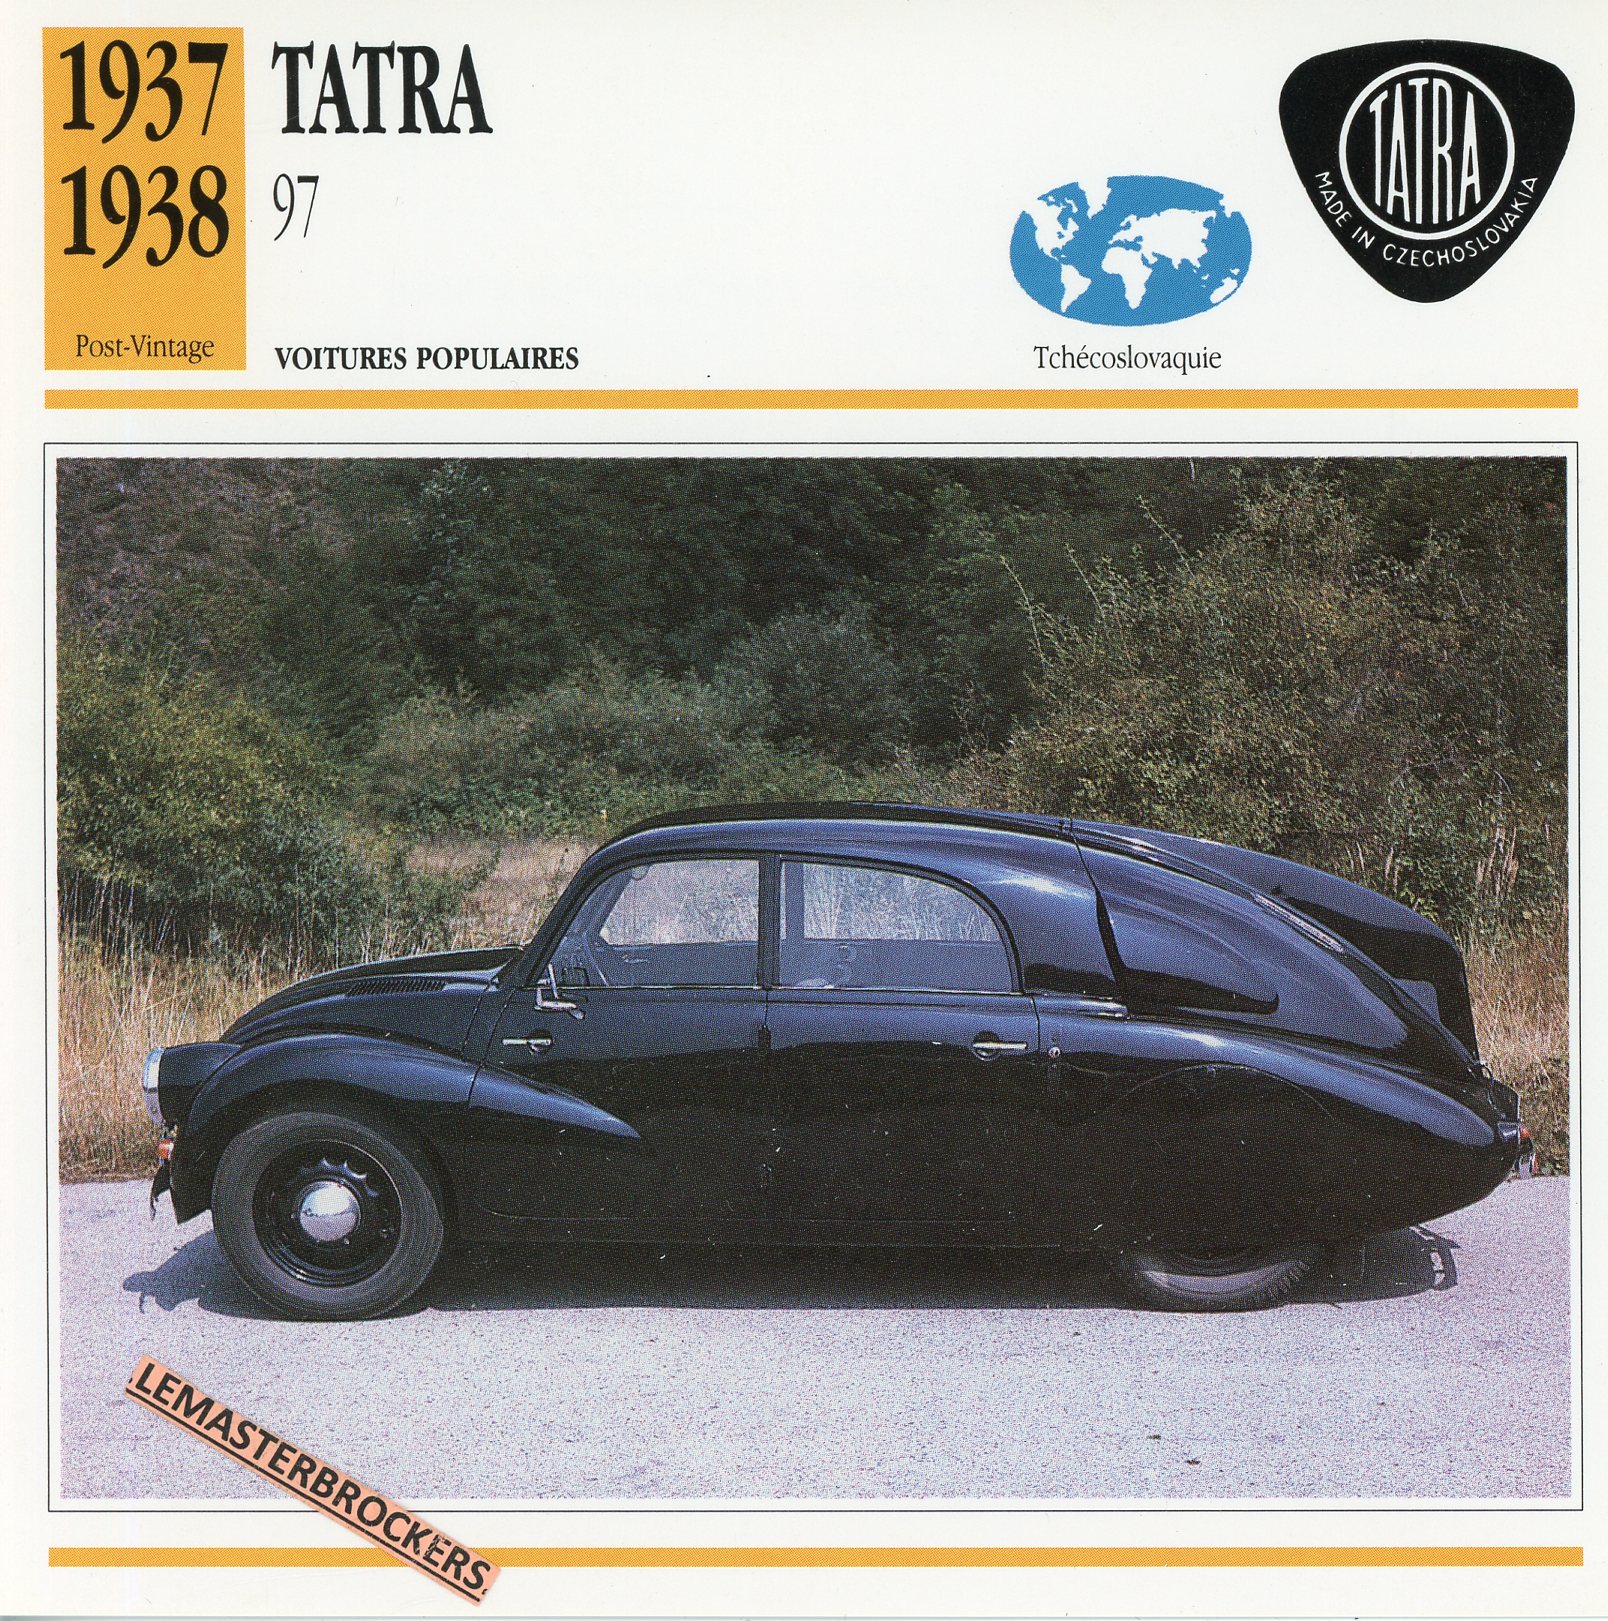 TATRA 97 1937 1938  - FICHE AUTO TATRA